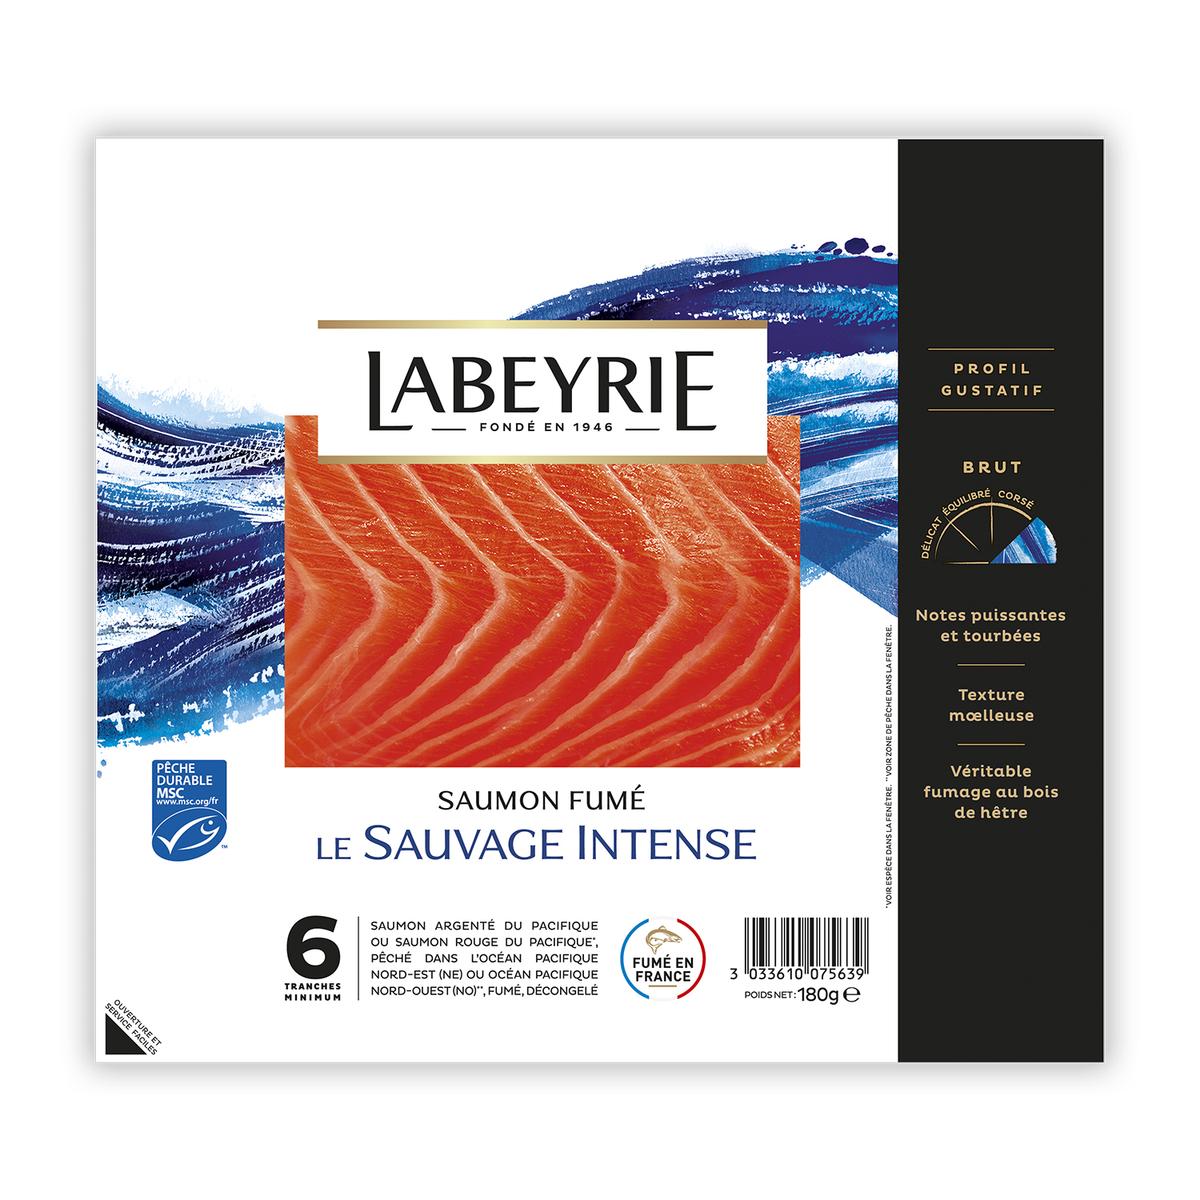 Saumon sauvage fumé - 2/3 tranches 150g - Iles Féroé ou Ecosse - Cdiscount  Au quotidien